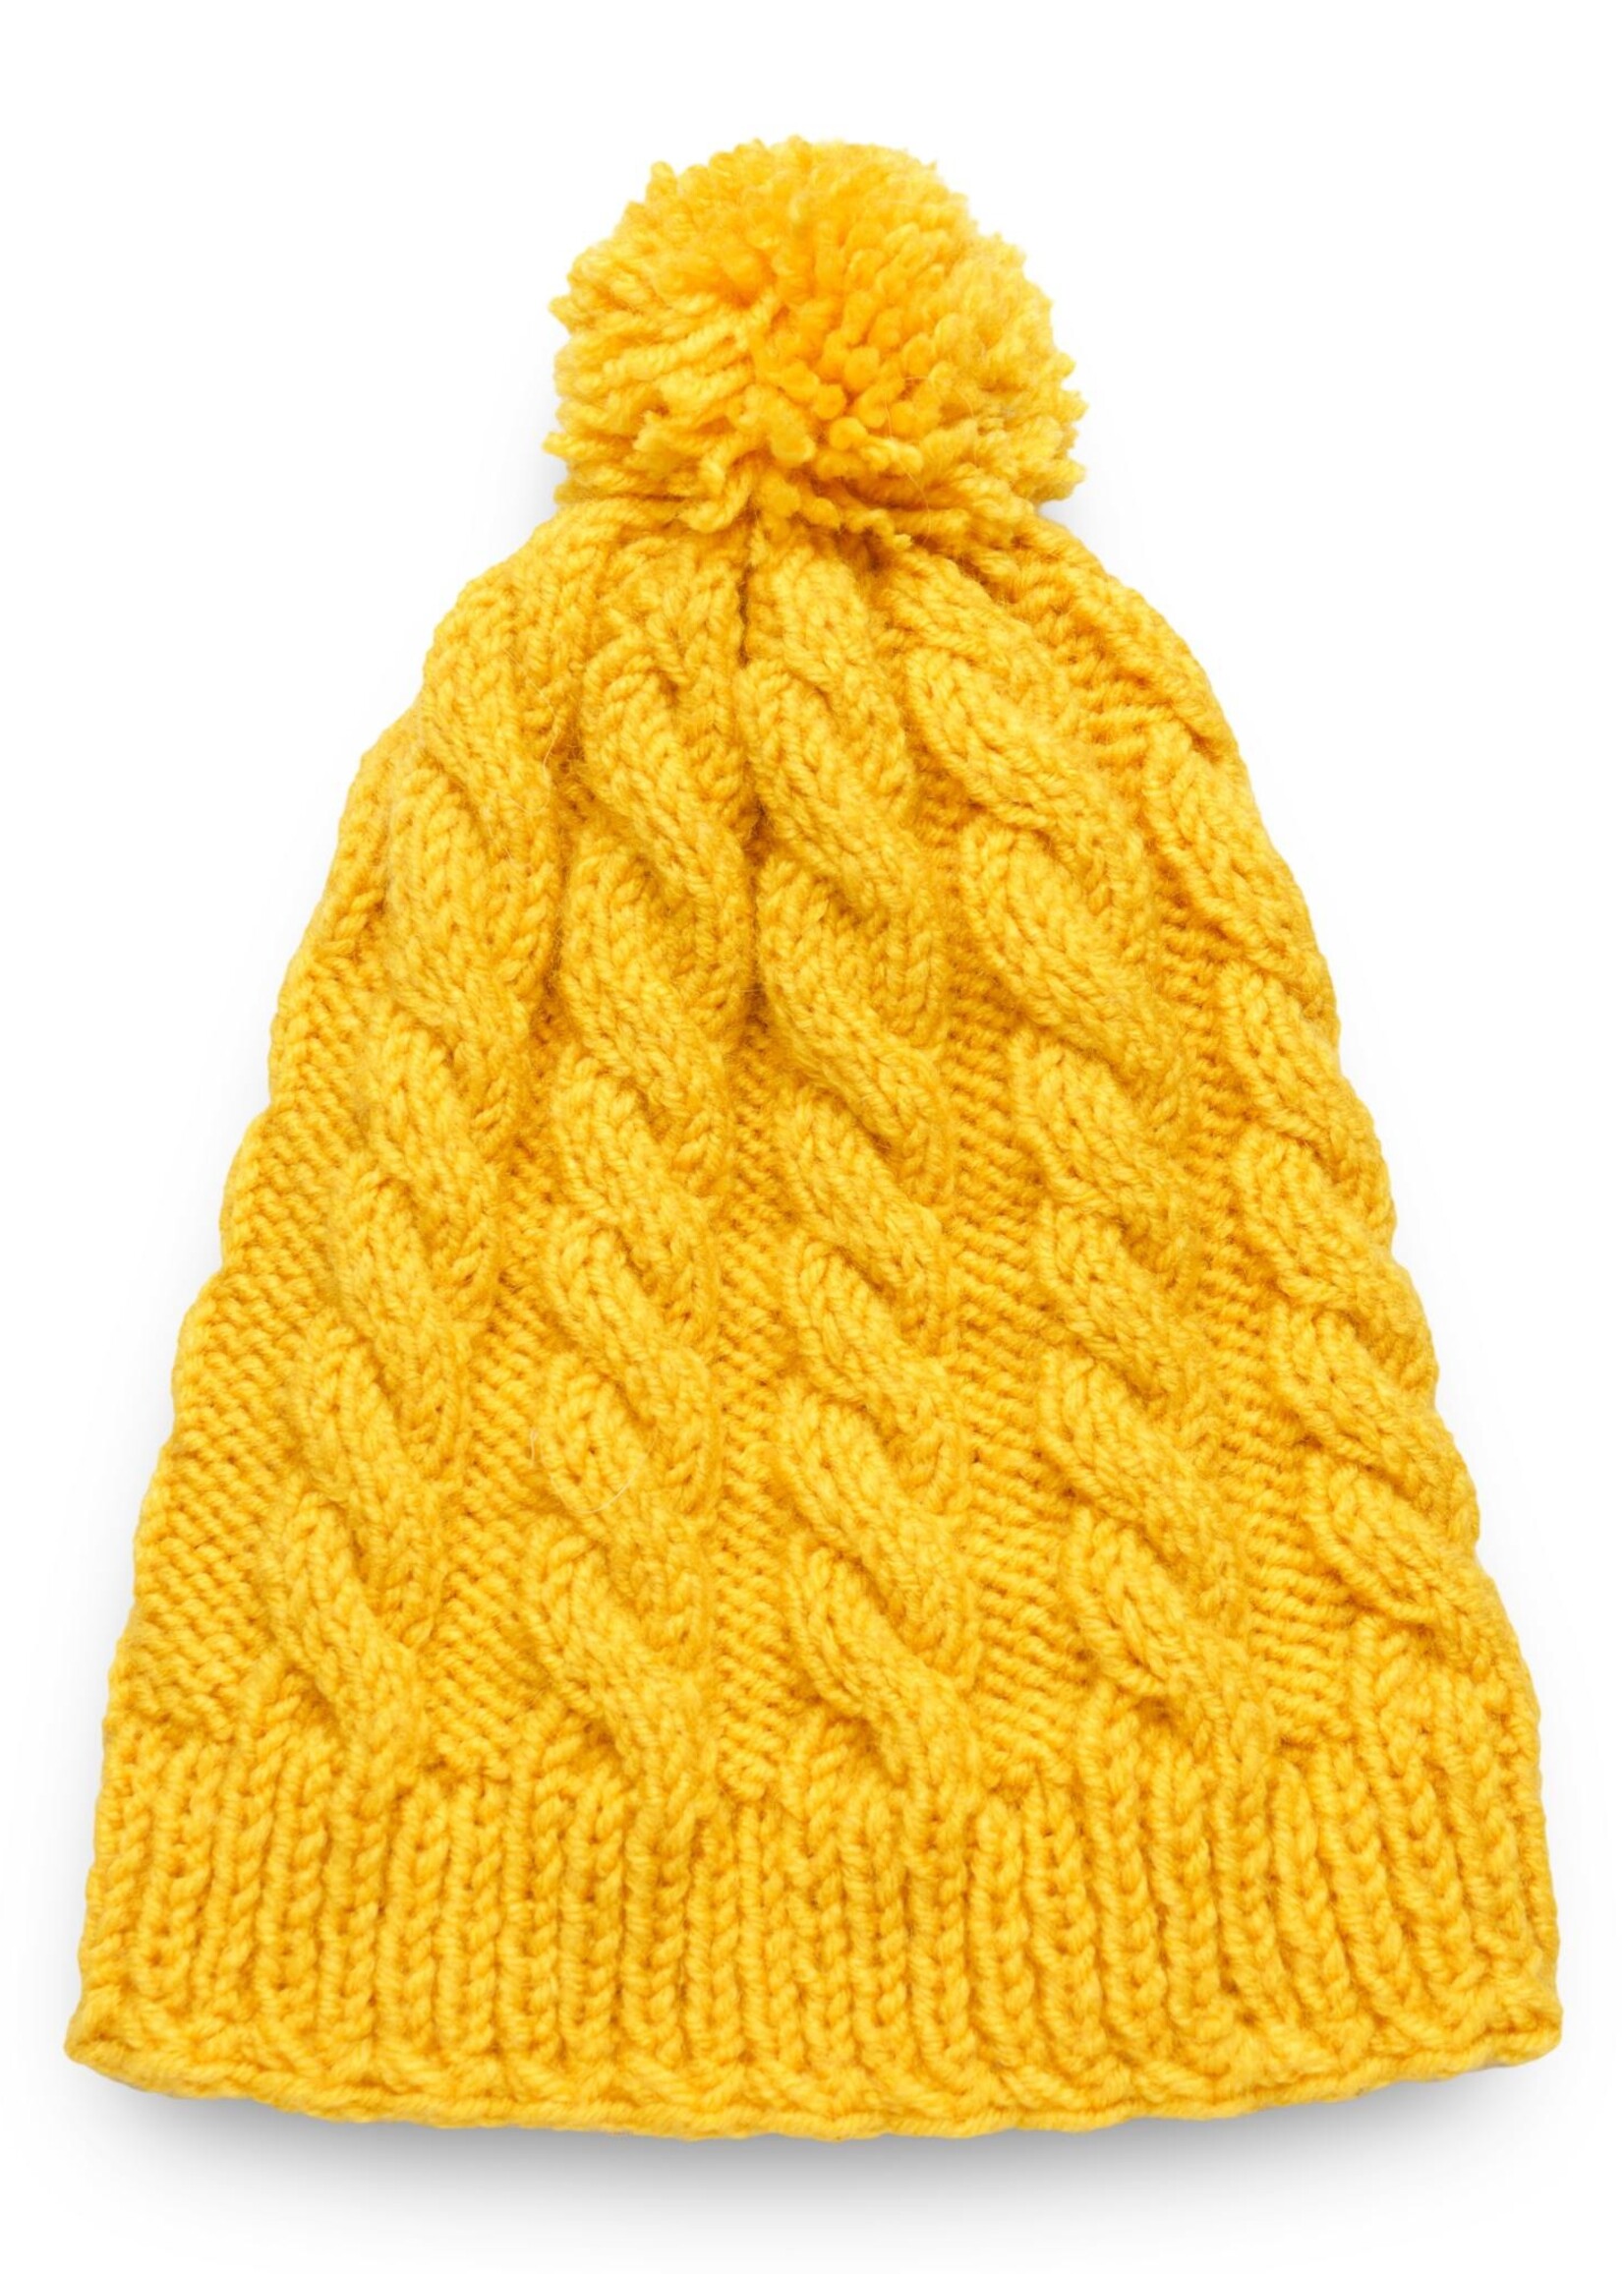 Yellow beanie hat